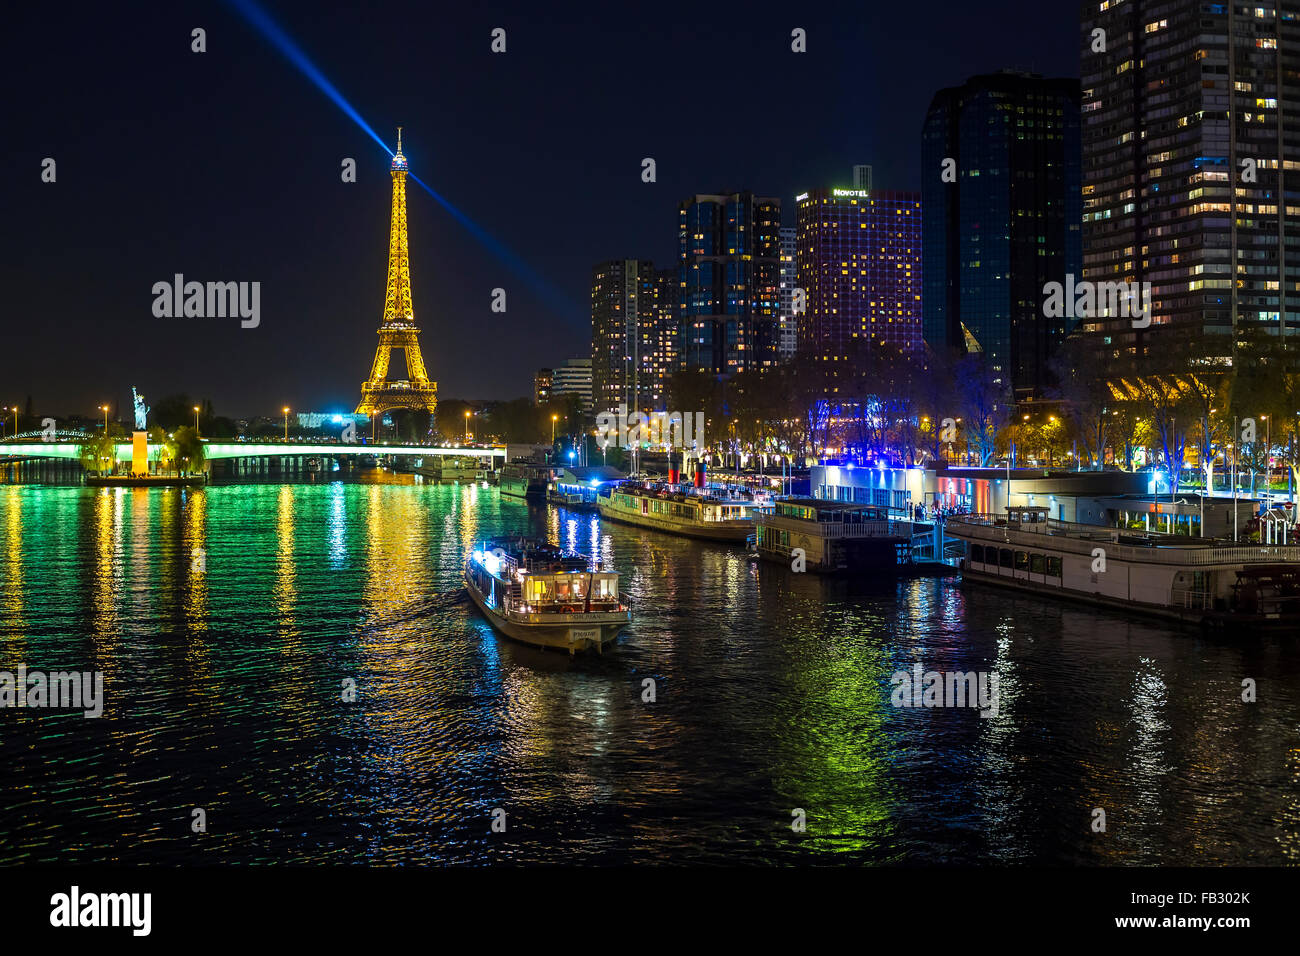 Vista notturna del Fiume Senna con barche e edifici ad alta sulla riva sinistra e la Torre Eiffel, Parigi, Francia, Europa Foto Stock